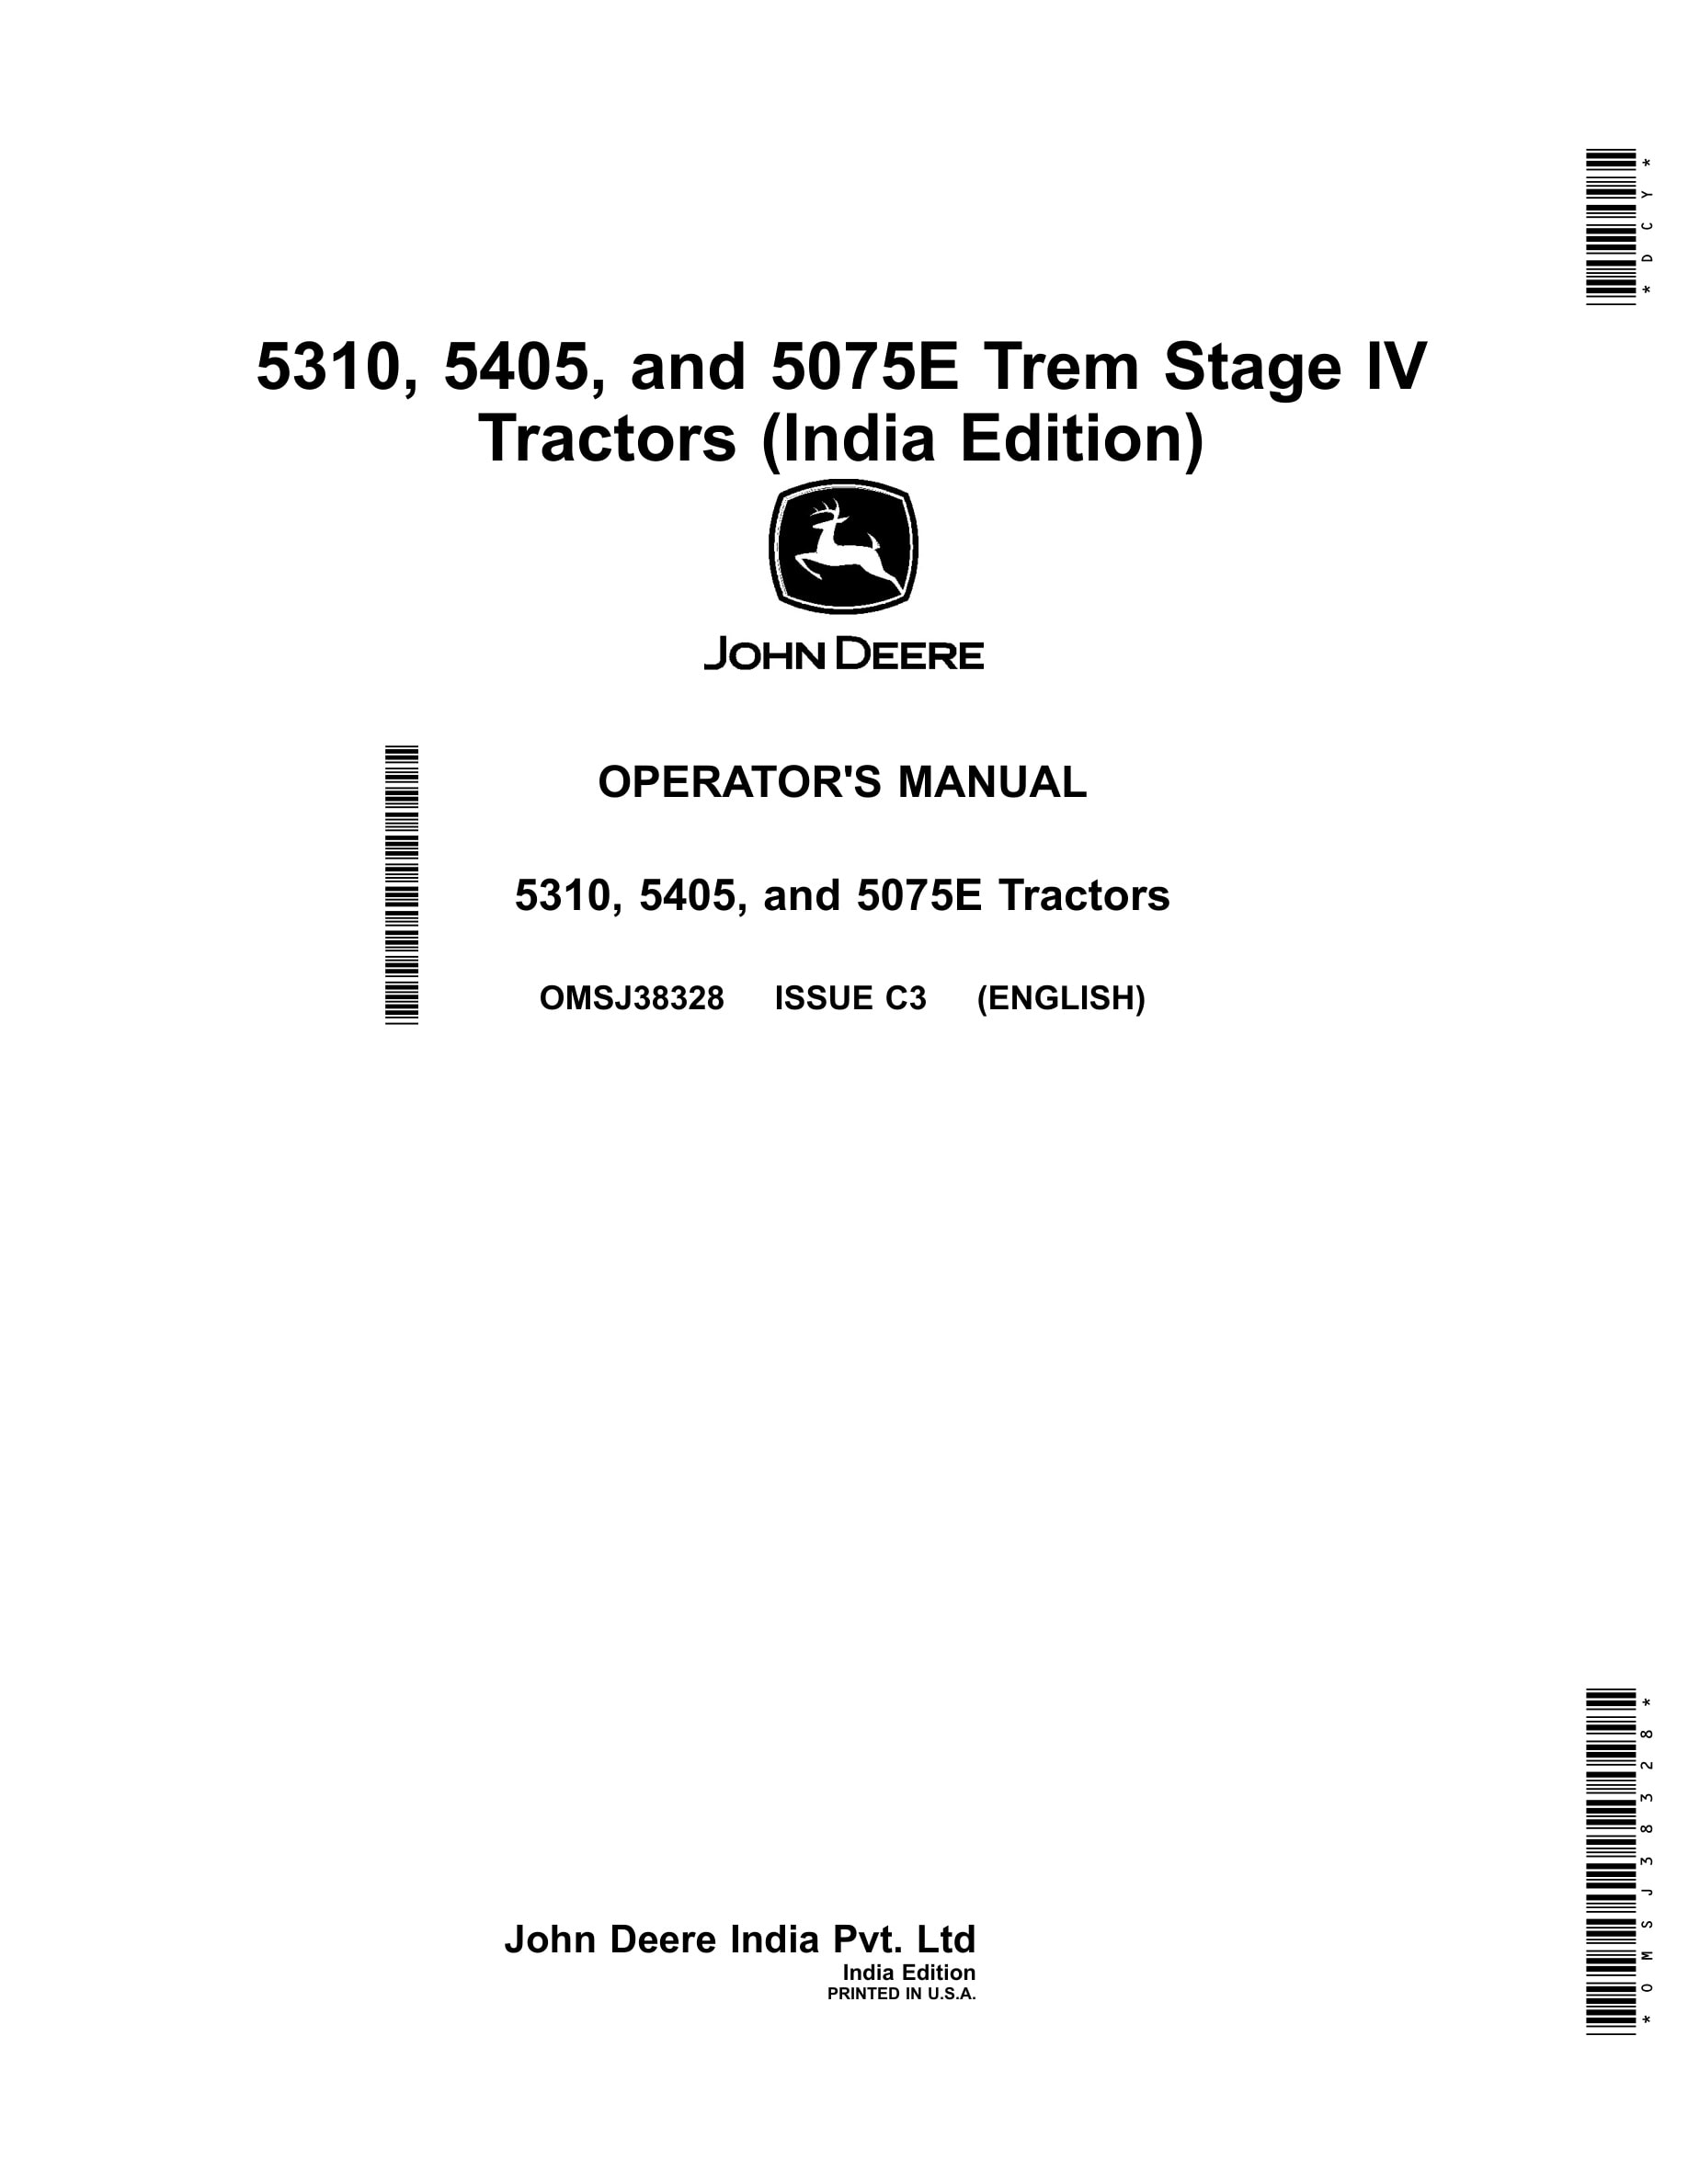 John Deere 5310, 5405, And 5075e Tractors Operator Manuals OMSJ38328-1